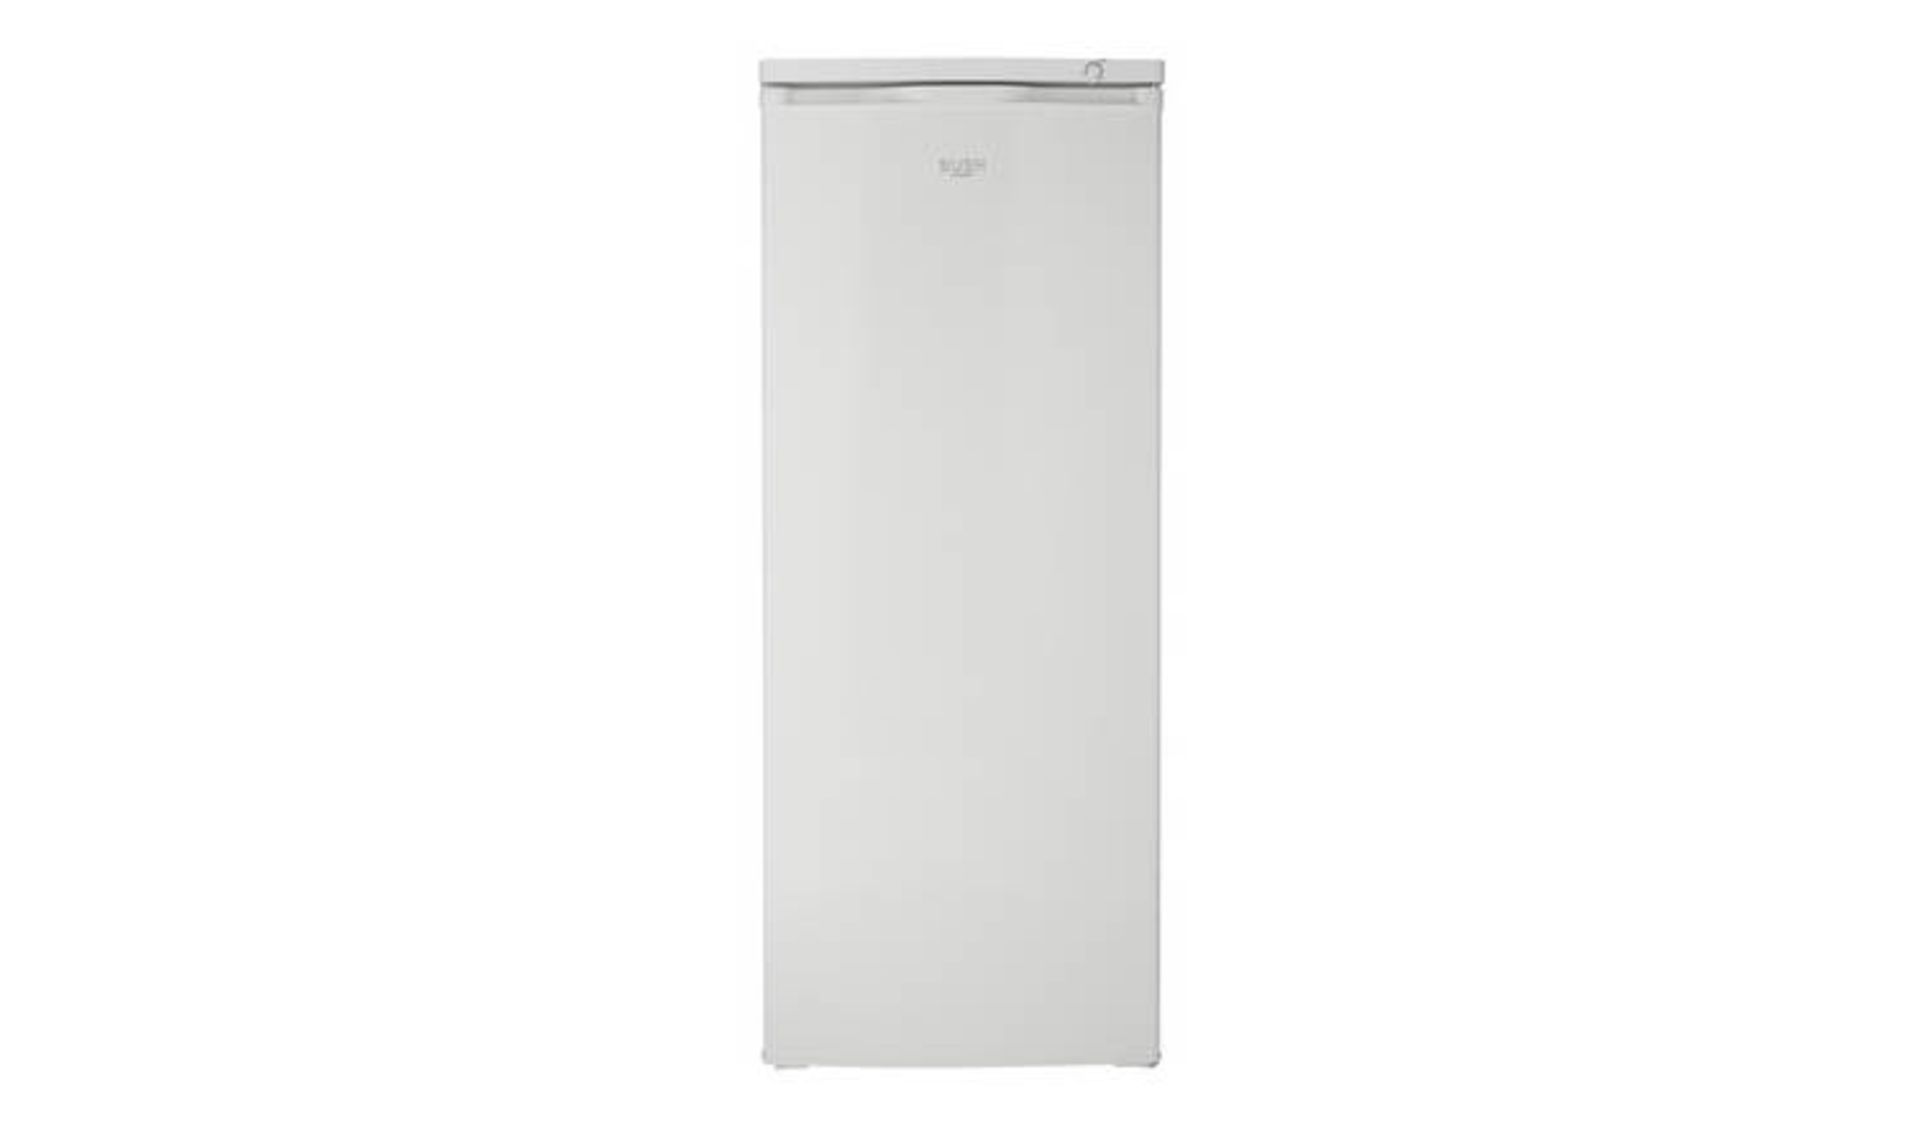 + VAT Grade A Bush M55TFW20 Tall Freezer - 163 Litre Capacity - Six Storage Compartments - A+